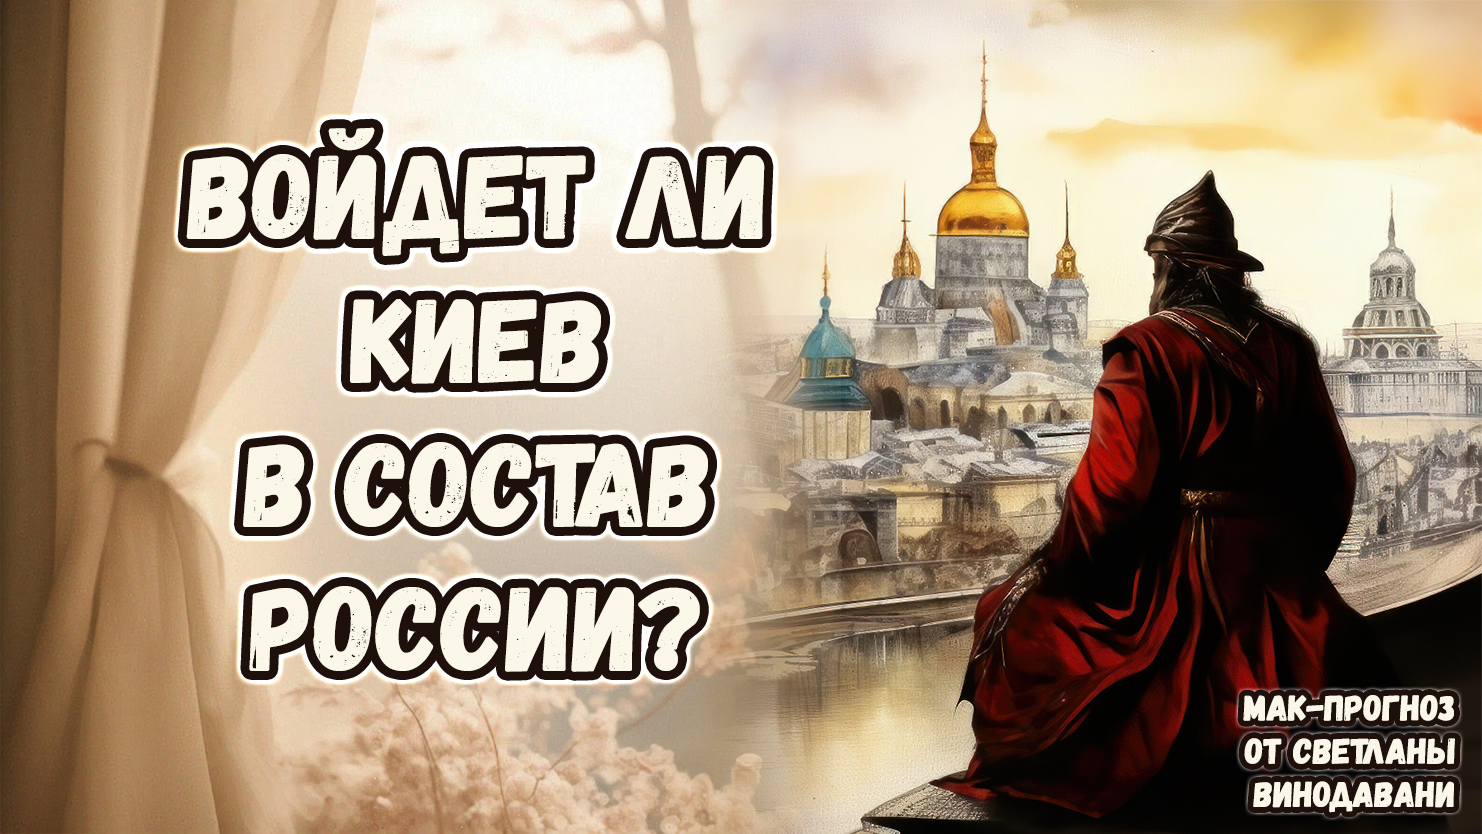 Войдет ли Киев в состав России? МАК-прогноз от Светланы Винодавани